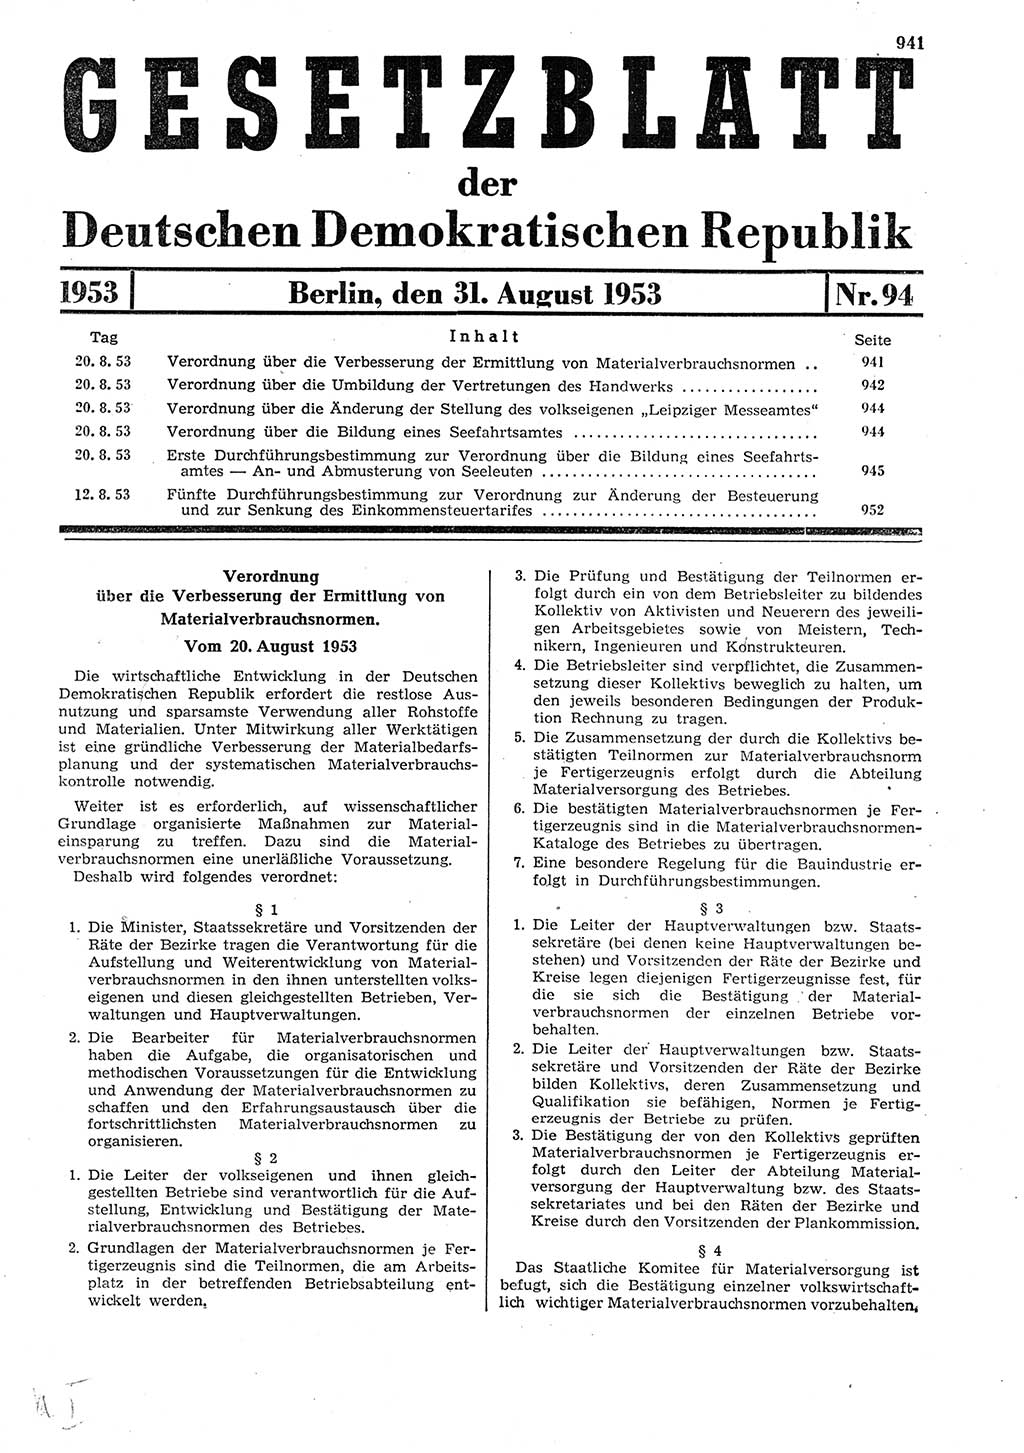 Gesetzblatt (GBl.) der Deutschen Demokratischen Republik (DDR) 1953, Seite 941 (GBl. DDR 1953, S. 941)